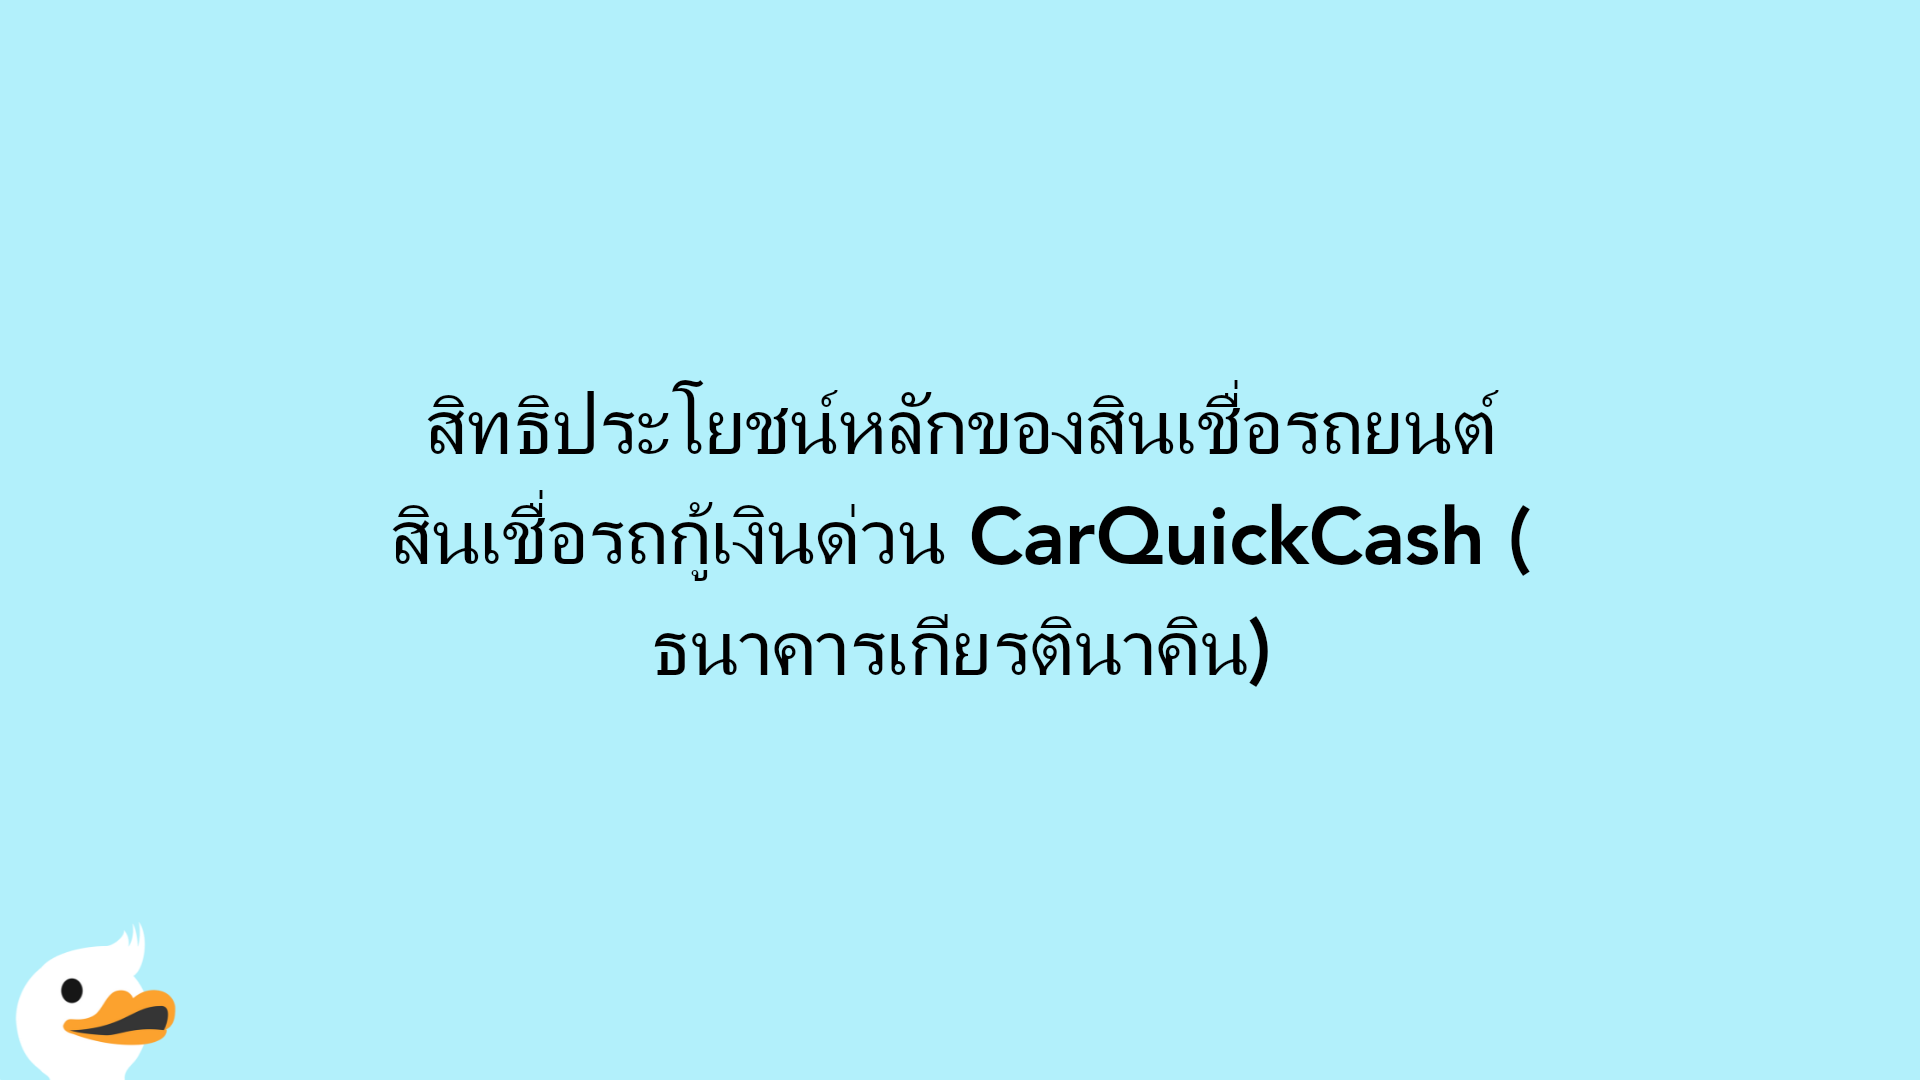 สิทธิประโยชน์หลักของสินเชื่อรถยนต์ สินเชื่อรถกู้เงินด่วน CarQuickCash (ธนาคารเกียรตินาคิน)